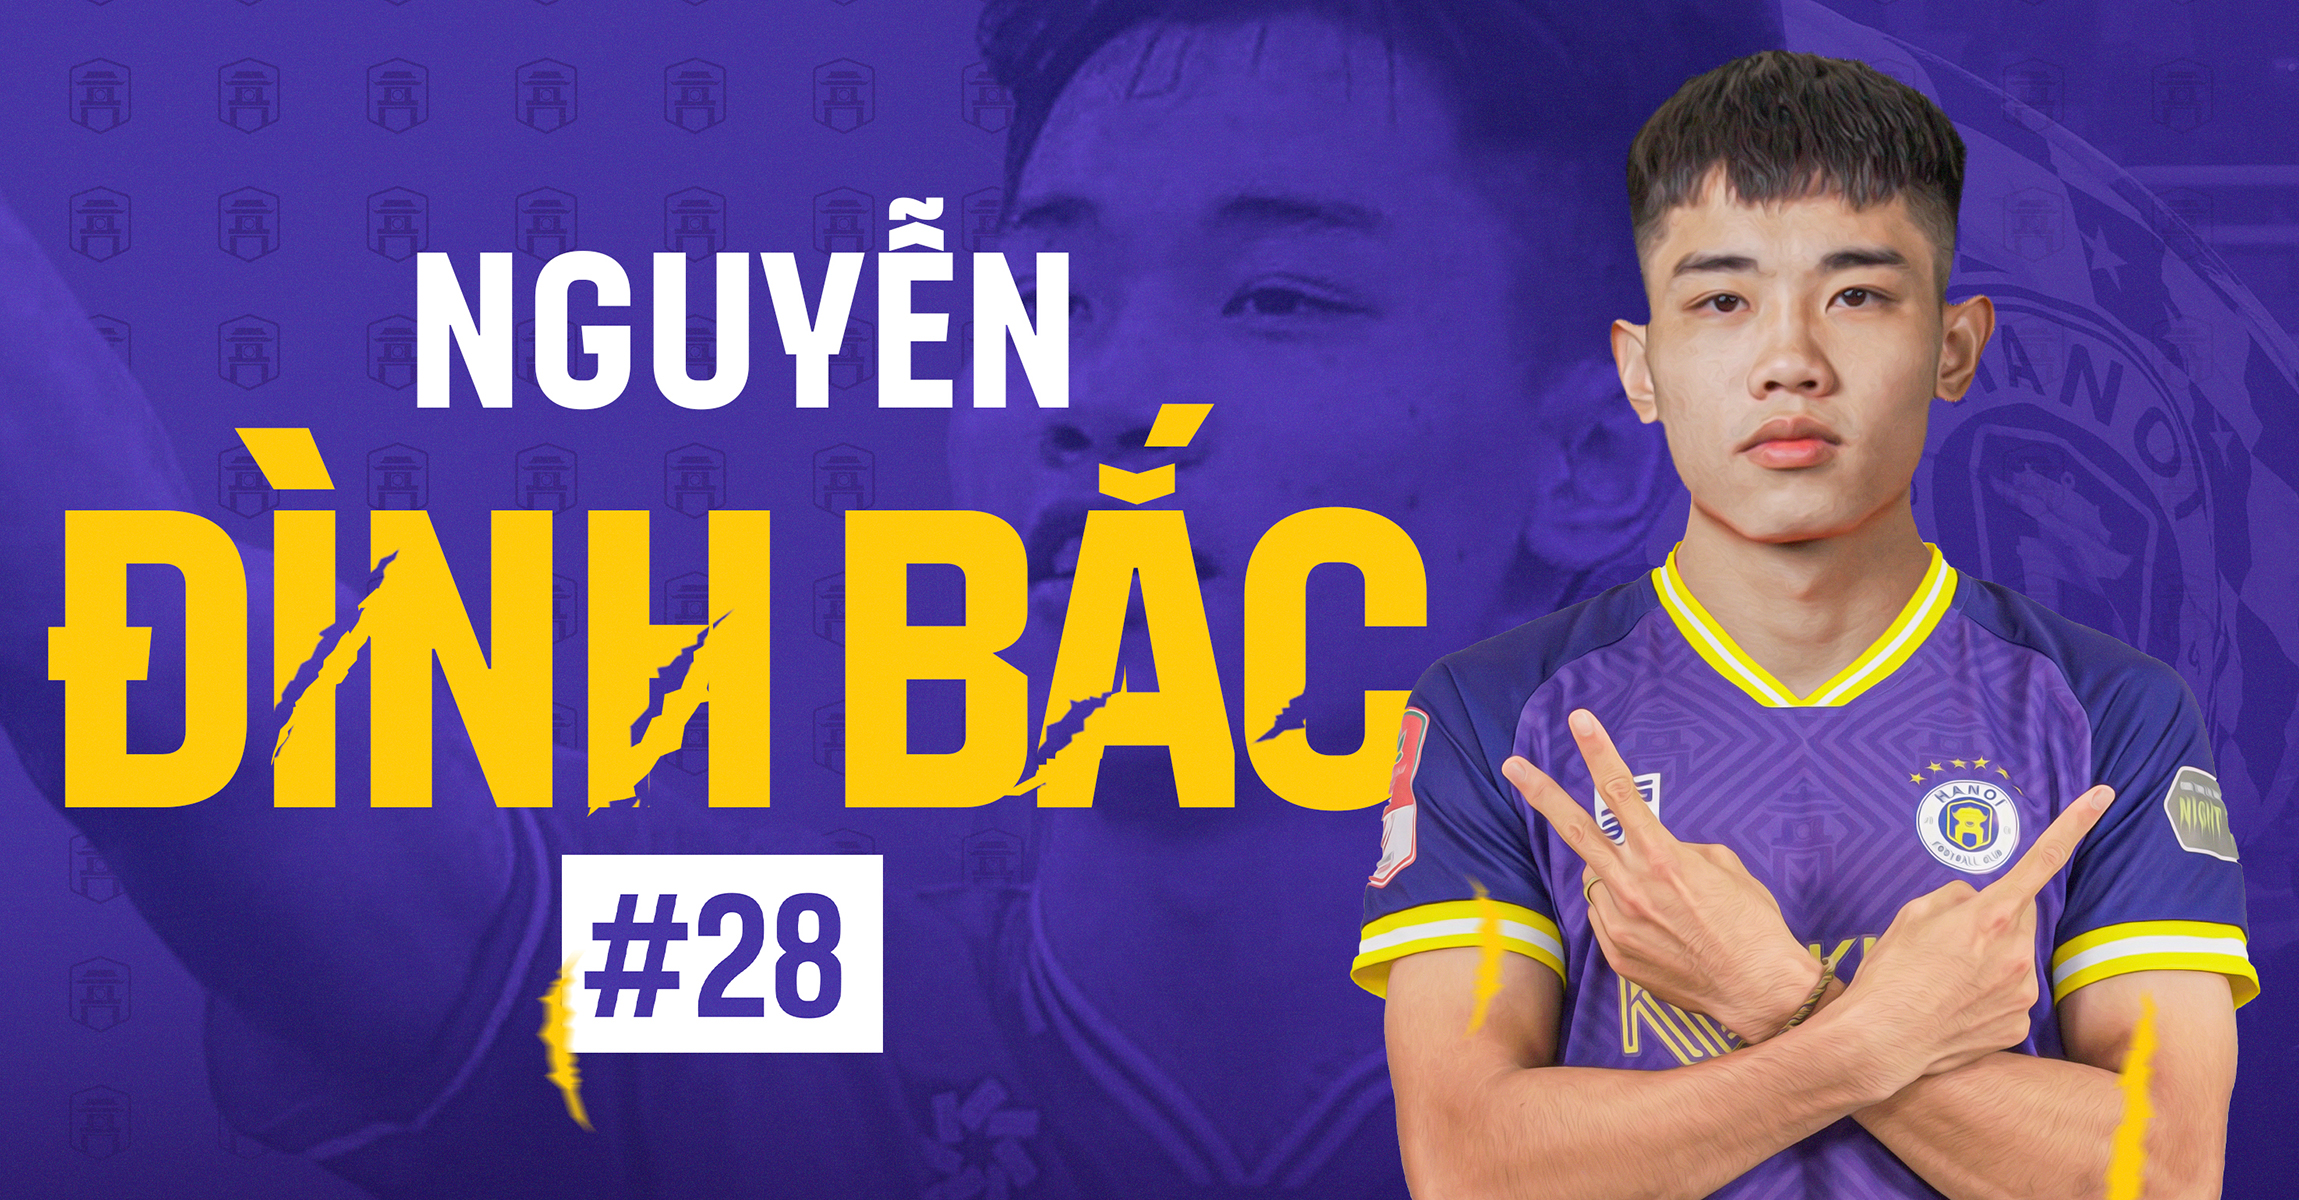 Nguyễn Đình Bắc chuyển tới thi đấu tại Hà Nội FC theo dạng cho mượn (Ảnh: Internet)